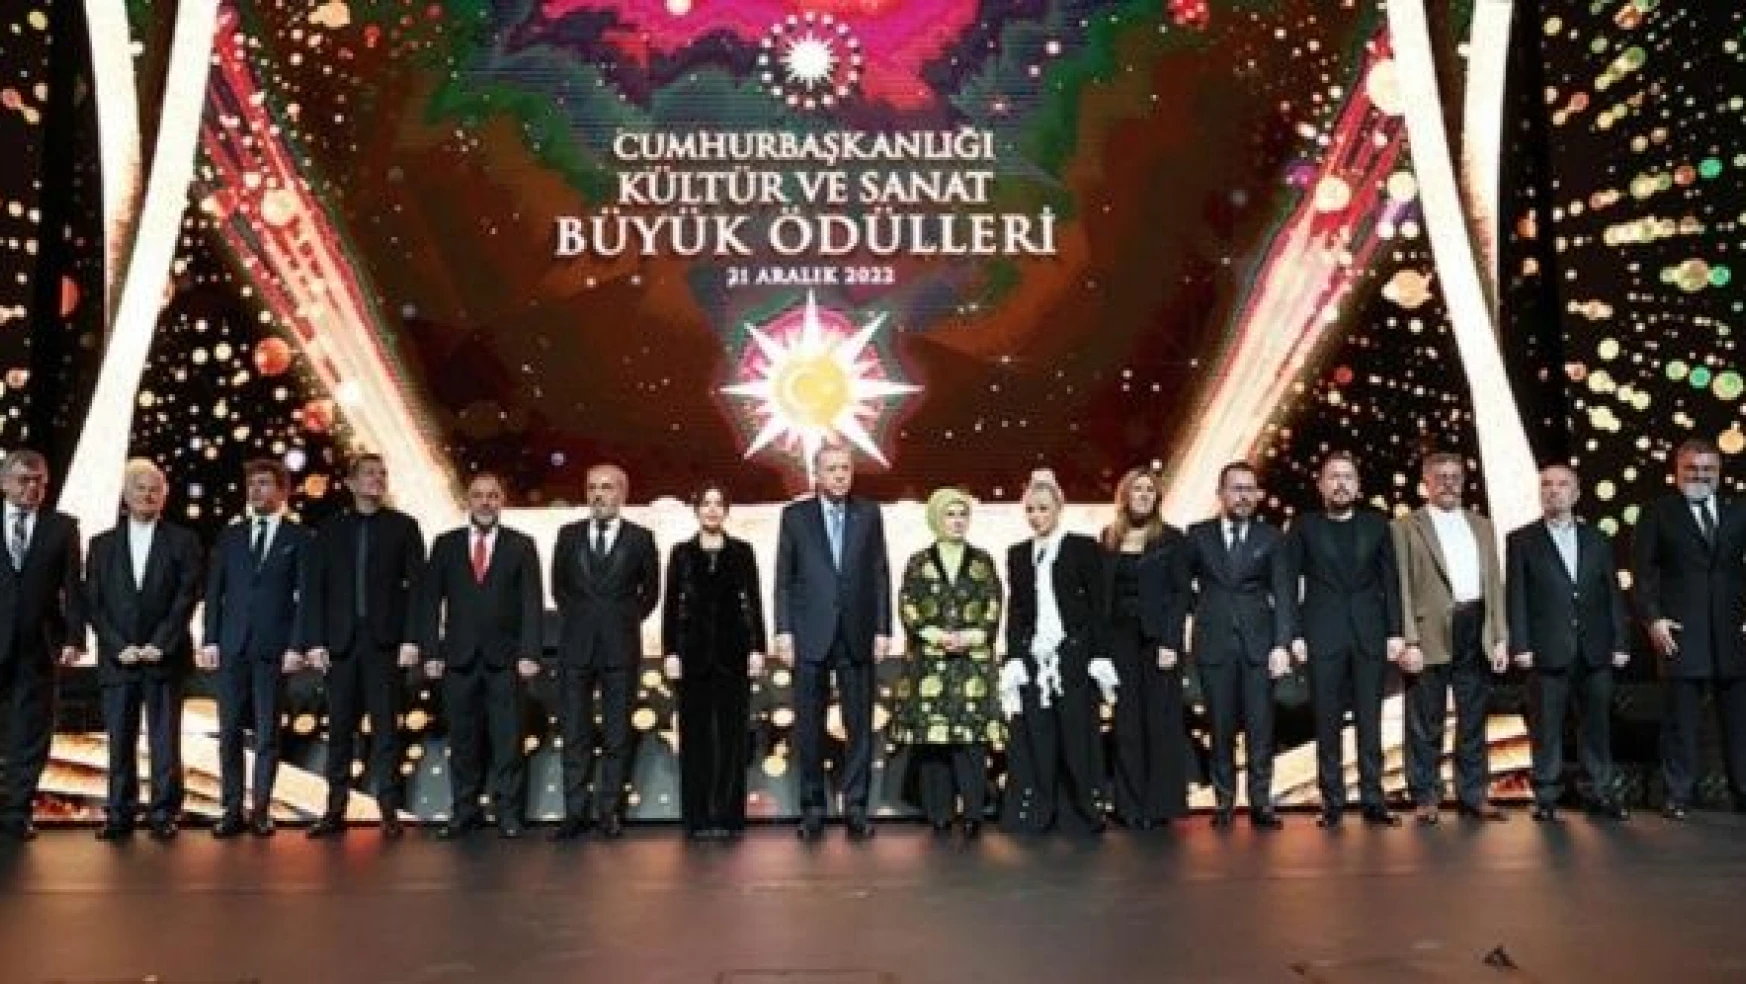 Cumhurbaşkanlığı Kültür ve Sanat Büyük Ödülleri Töreni yapıldı